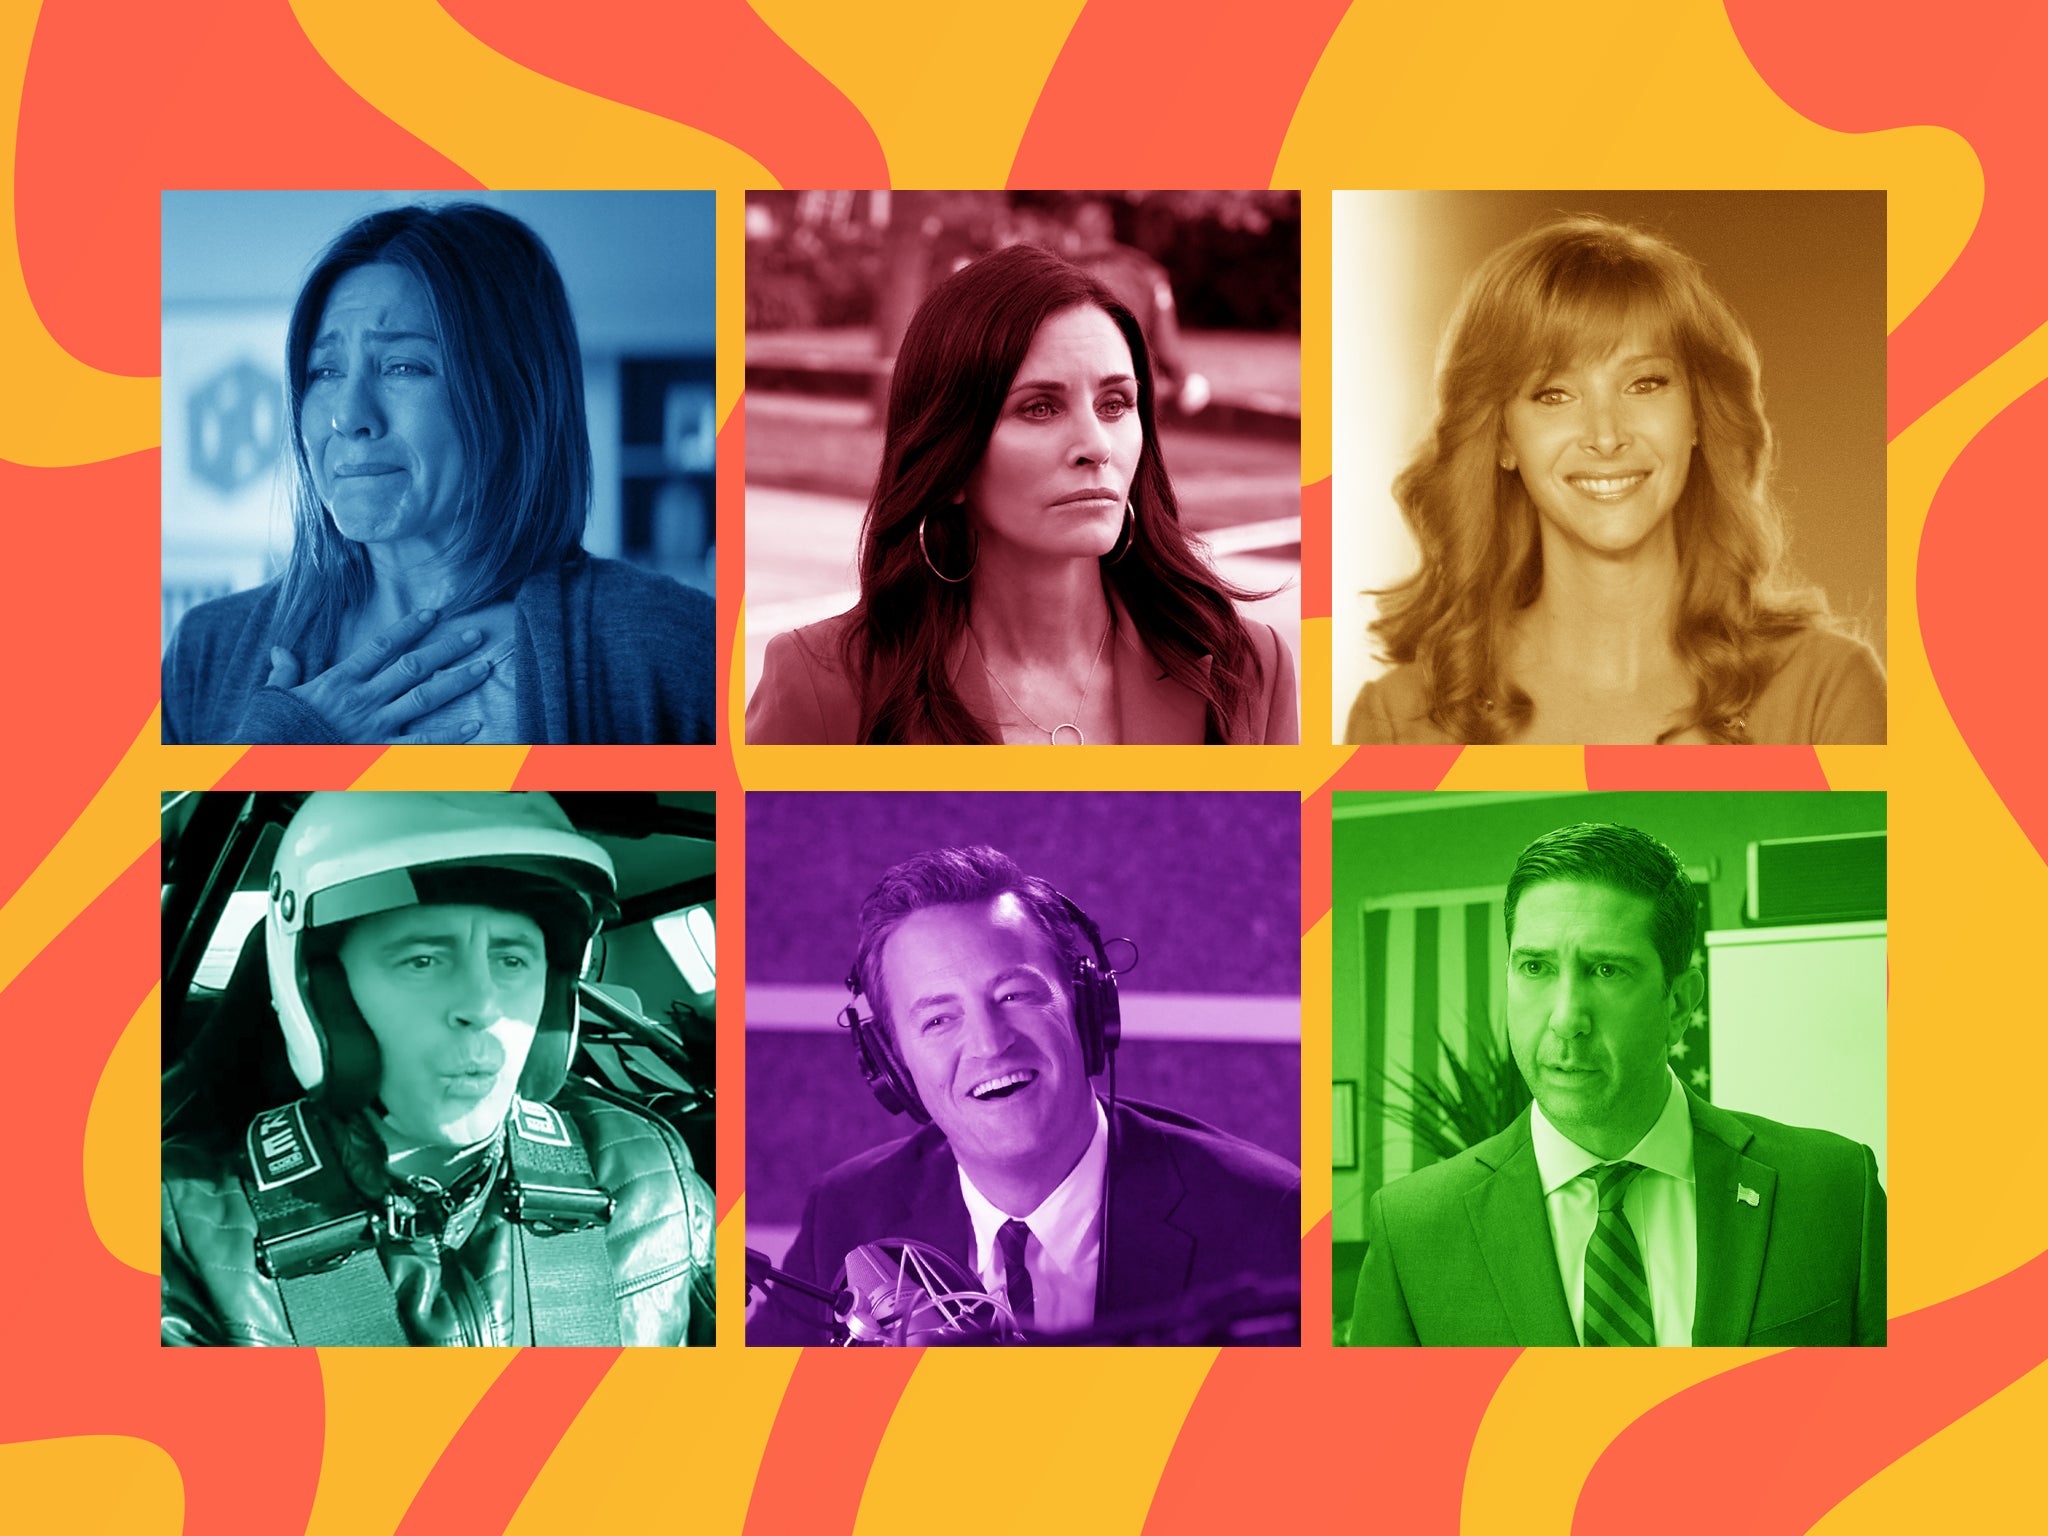 <p>Los amigos después de ‘Friends’: Jennifer Aniston en ‘Cake’, Courteney Cox en ‘Scream’, Lisa Kudrow en ‘The Comeback’, David Schwimmer en ‘Intelligence’, Matthew Perry en ‘Go On’ y Matt LeBlanc en ‘Top Gear’</p>